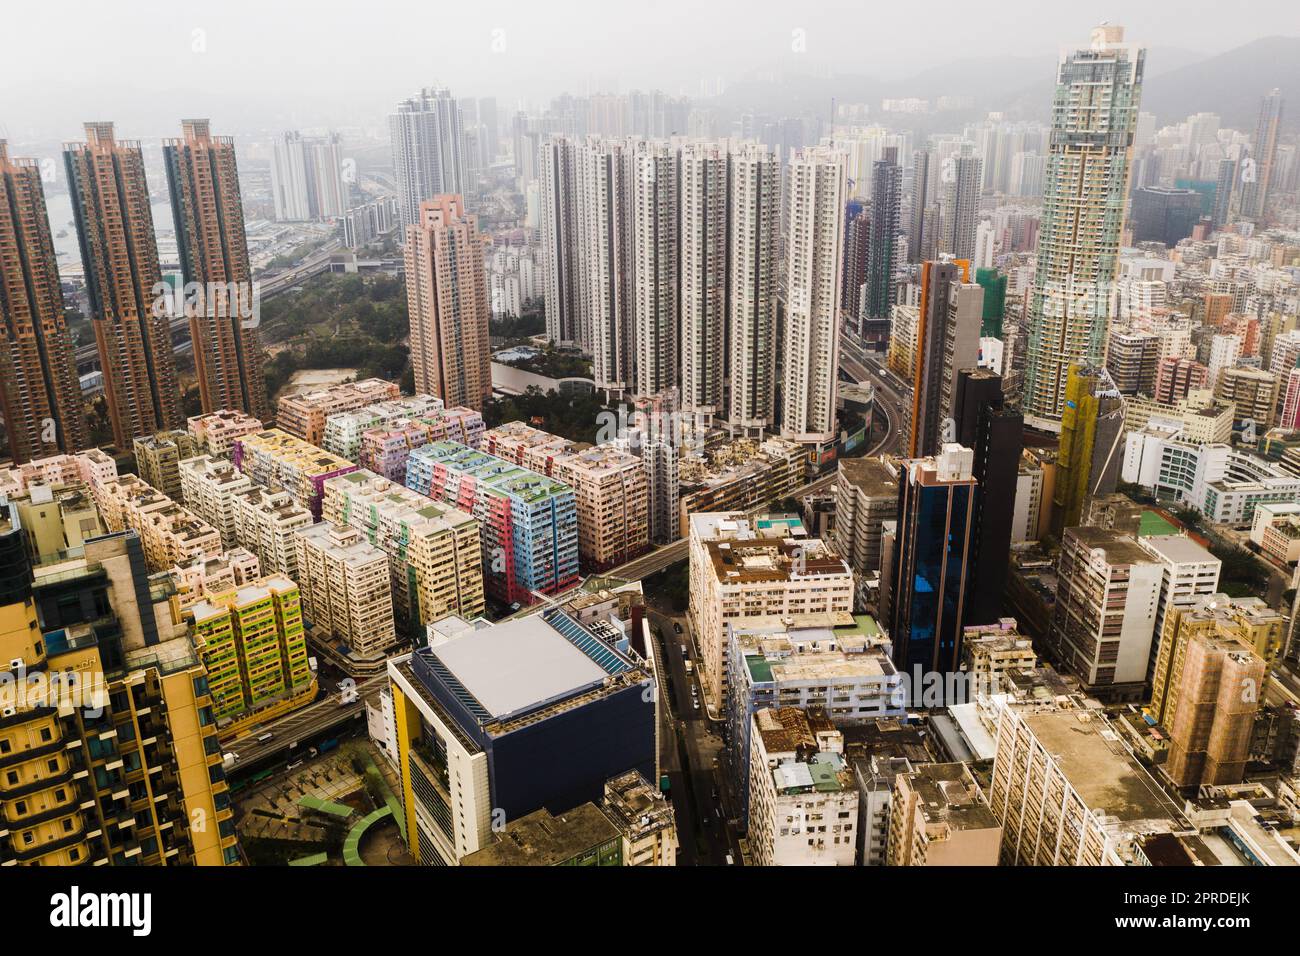 Entdecken Sie die Stadt Hongkong. Wolkenkratzer, Bürogebäude und andere Geschäftsgebäude in der urbanen Metropole Hongkong. Stockfoto